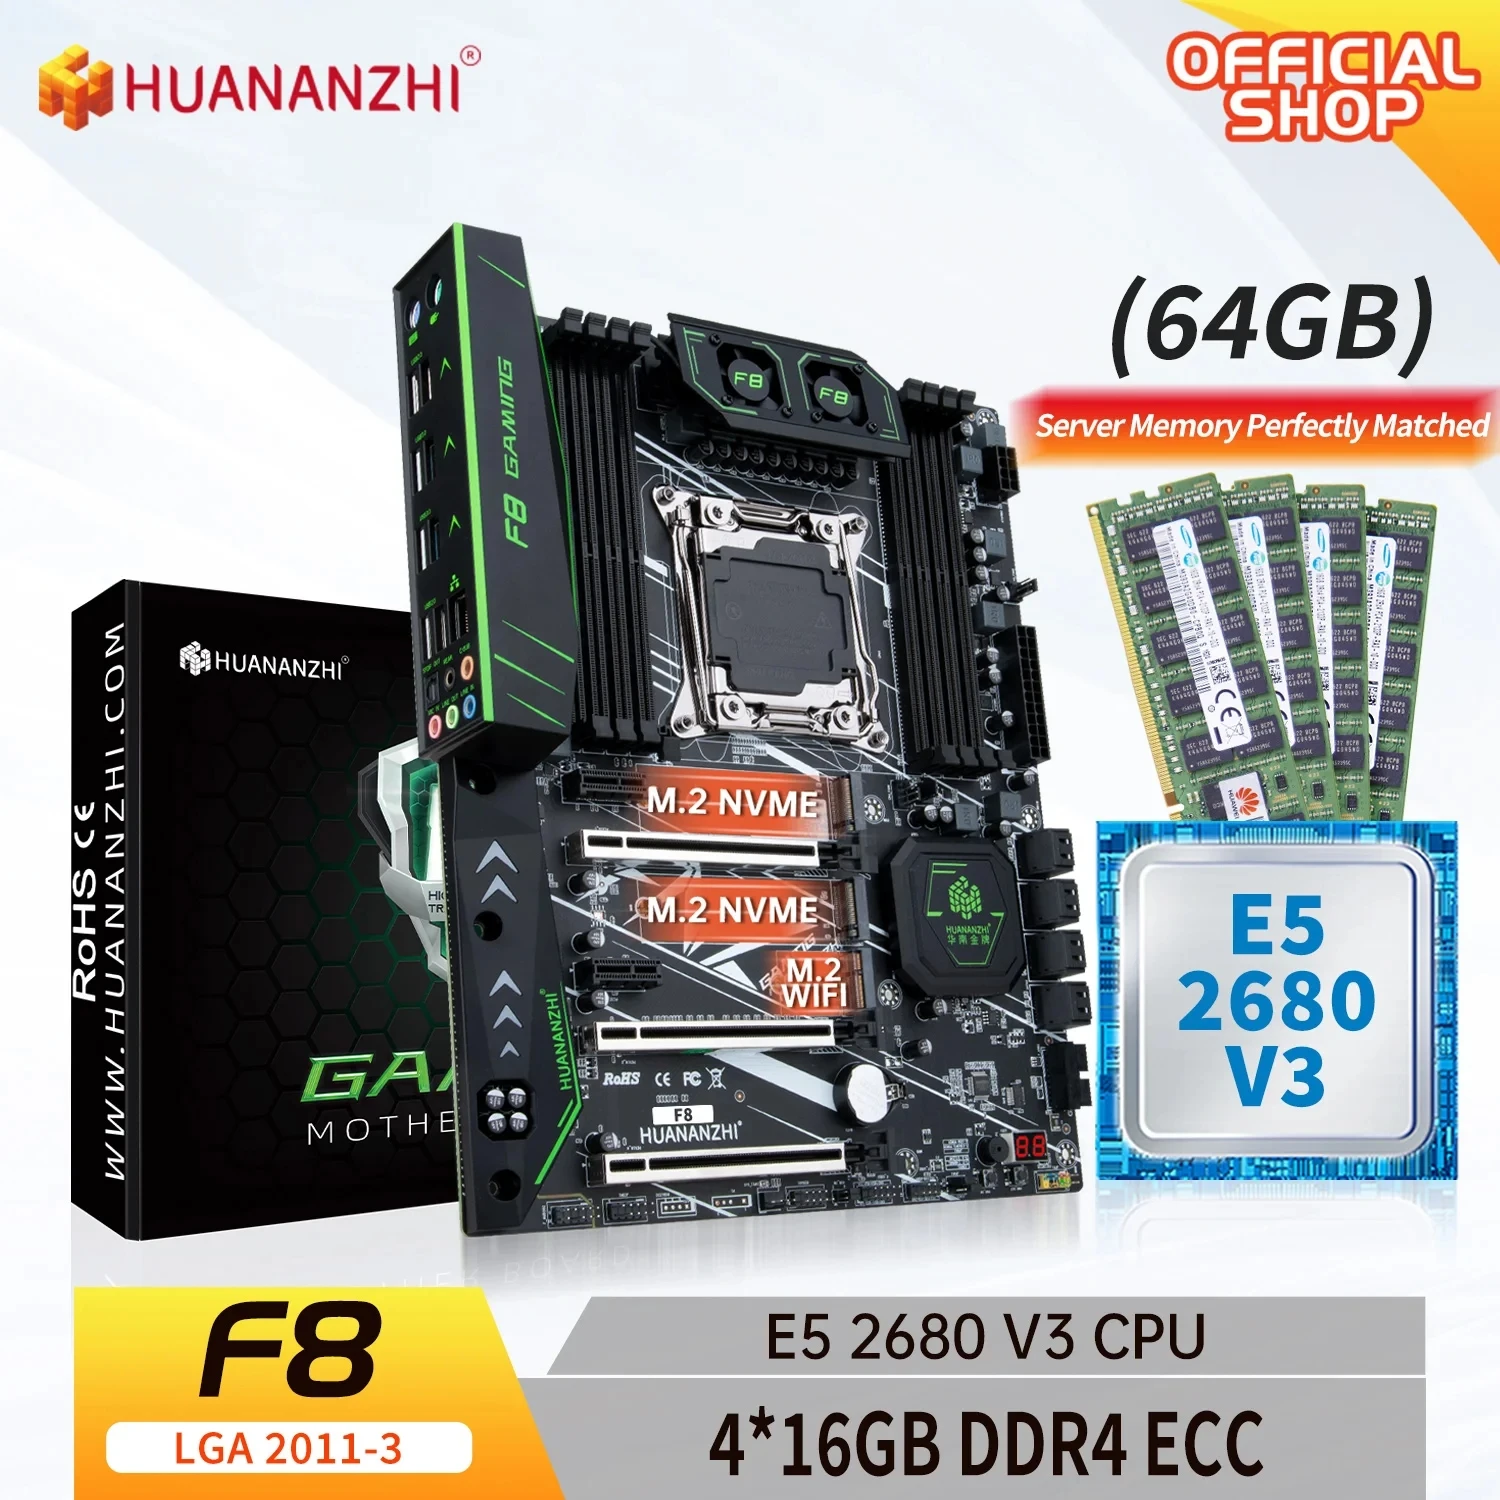 HUANANZHI X99 F8 LGA 2011-3 XEON základní Desky X99 s procesory Intel E5 2680 V3 s 4*16G DDR4 RECC paměti combo kit sada NVME SATA Obrázek 0